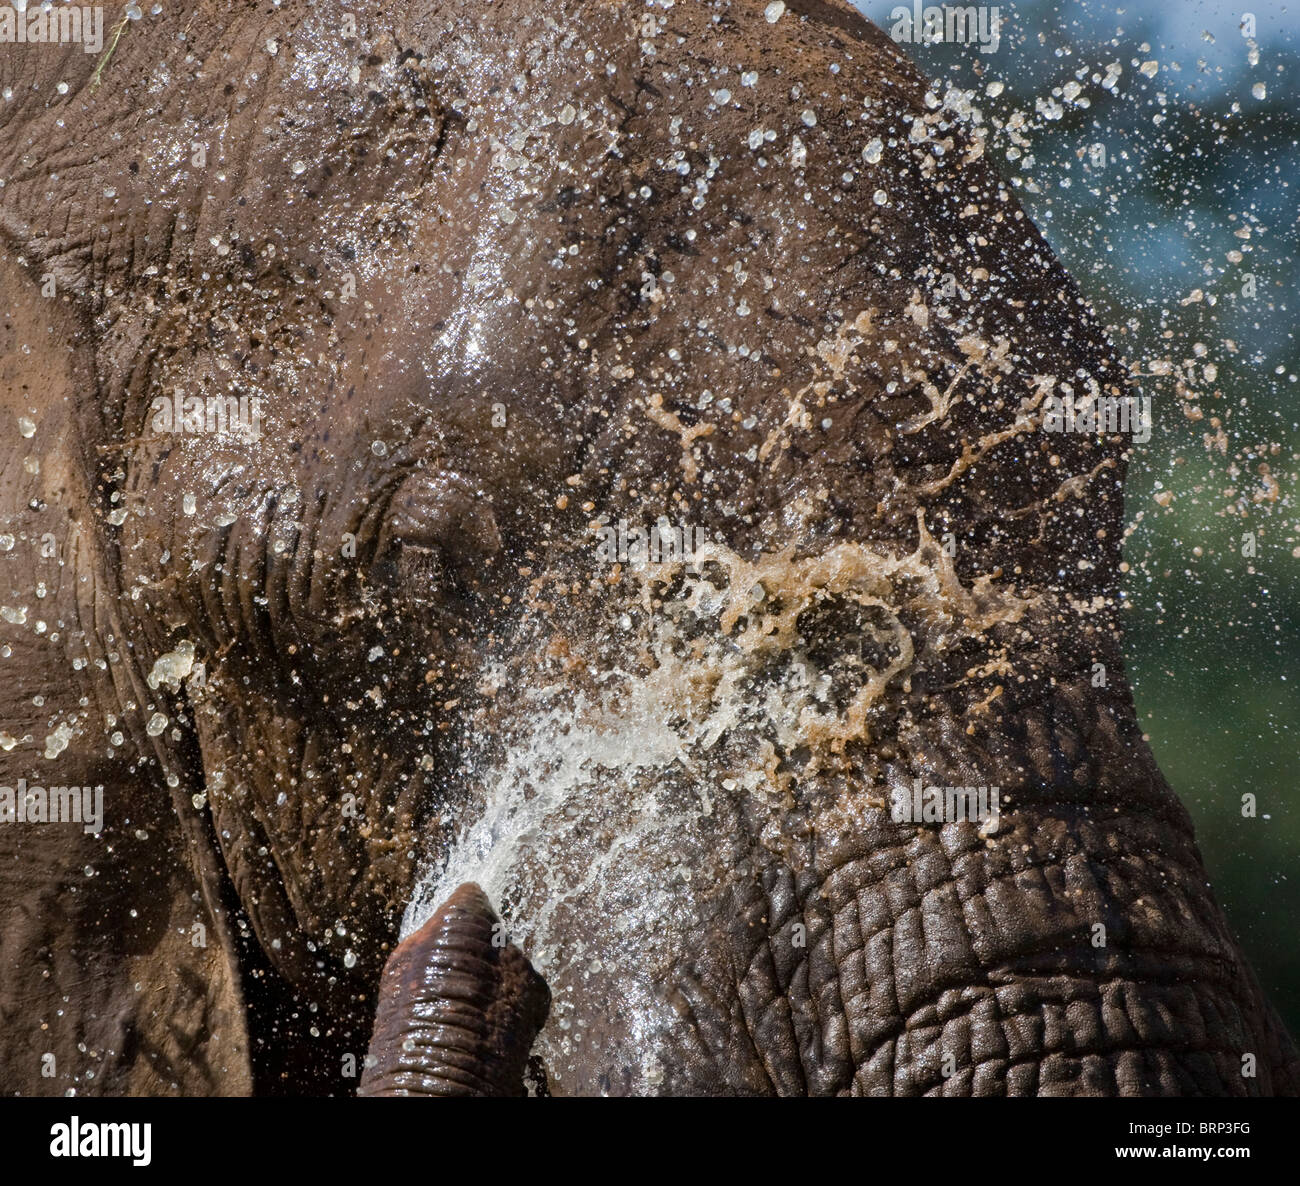 Portrait de l'éléphant d'eau éjacule sur son visage Banque D'Images